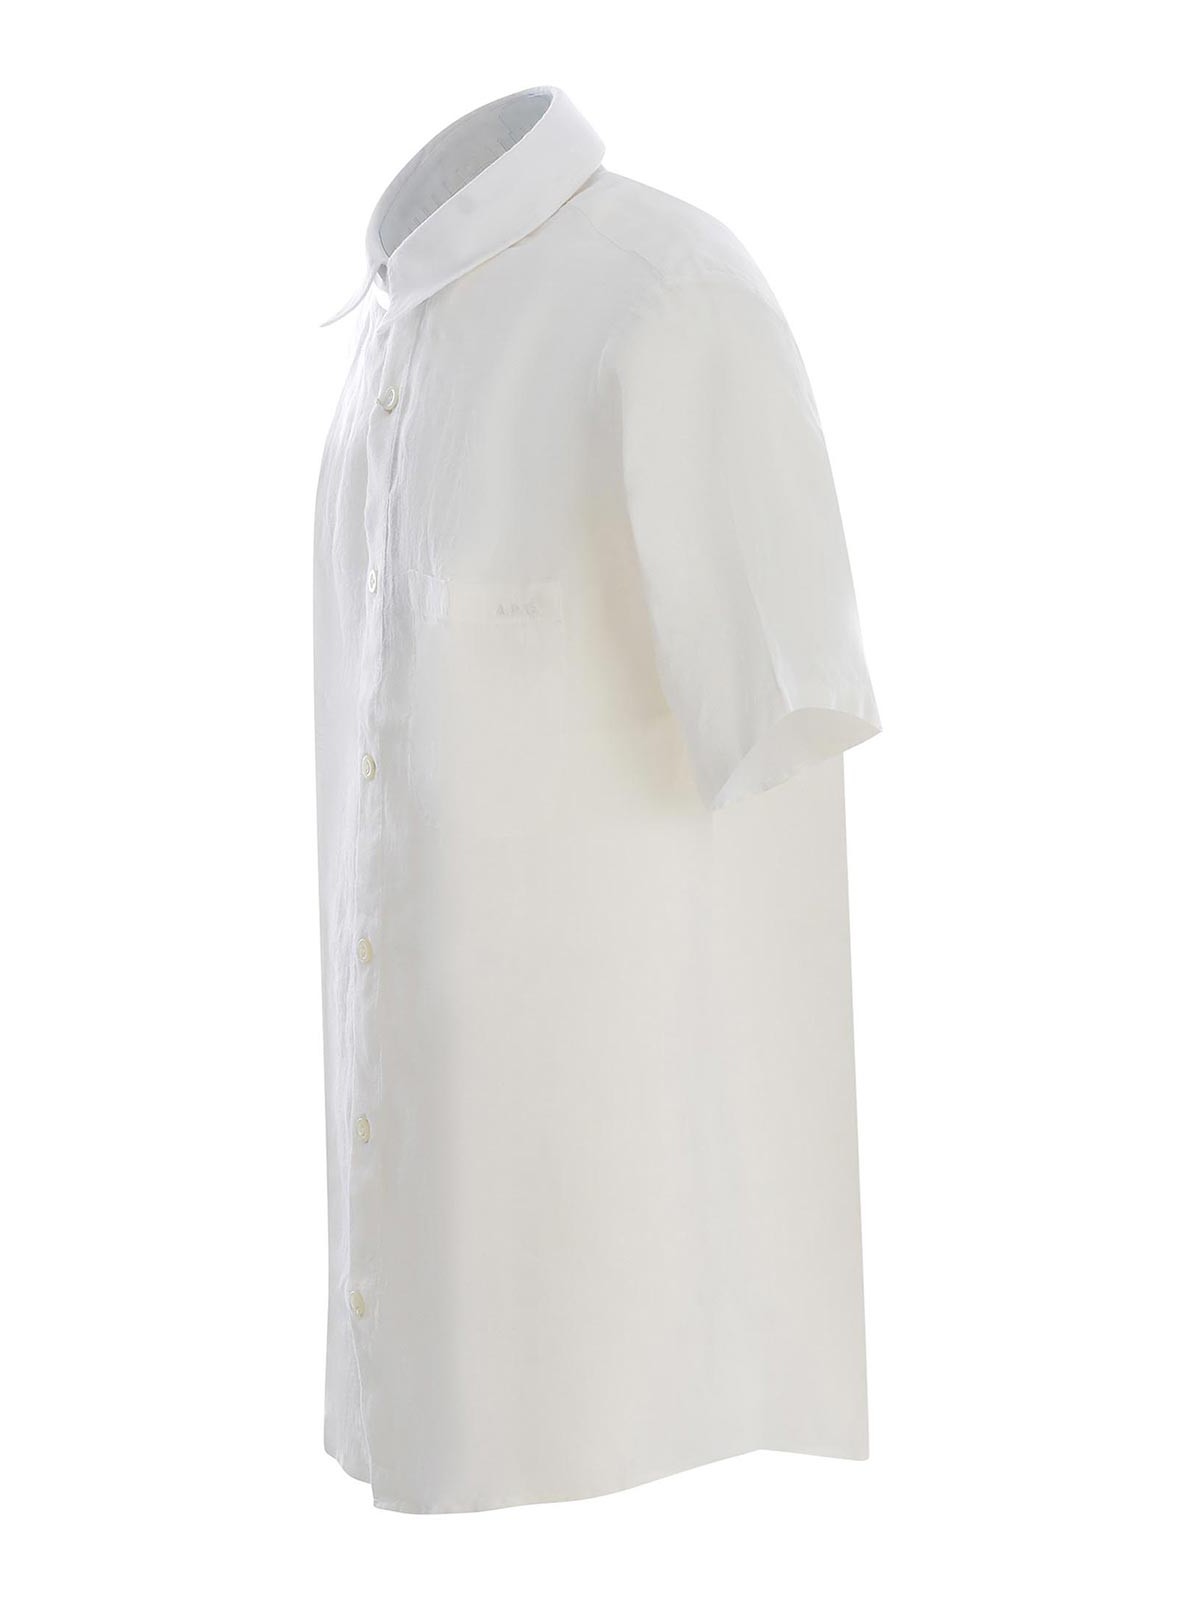 Shop Apc Camisa - Blanco In White